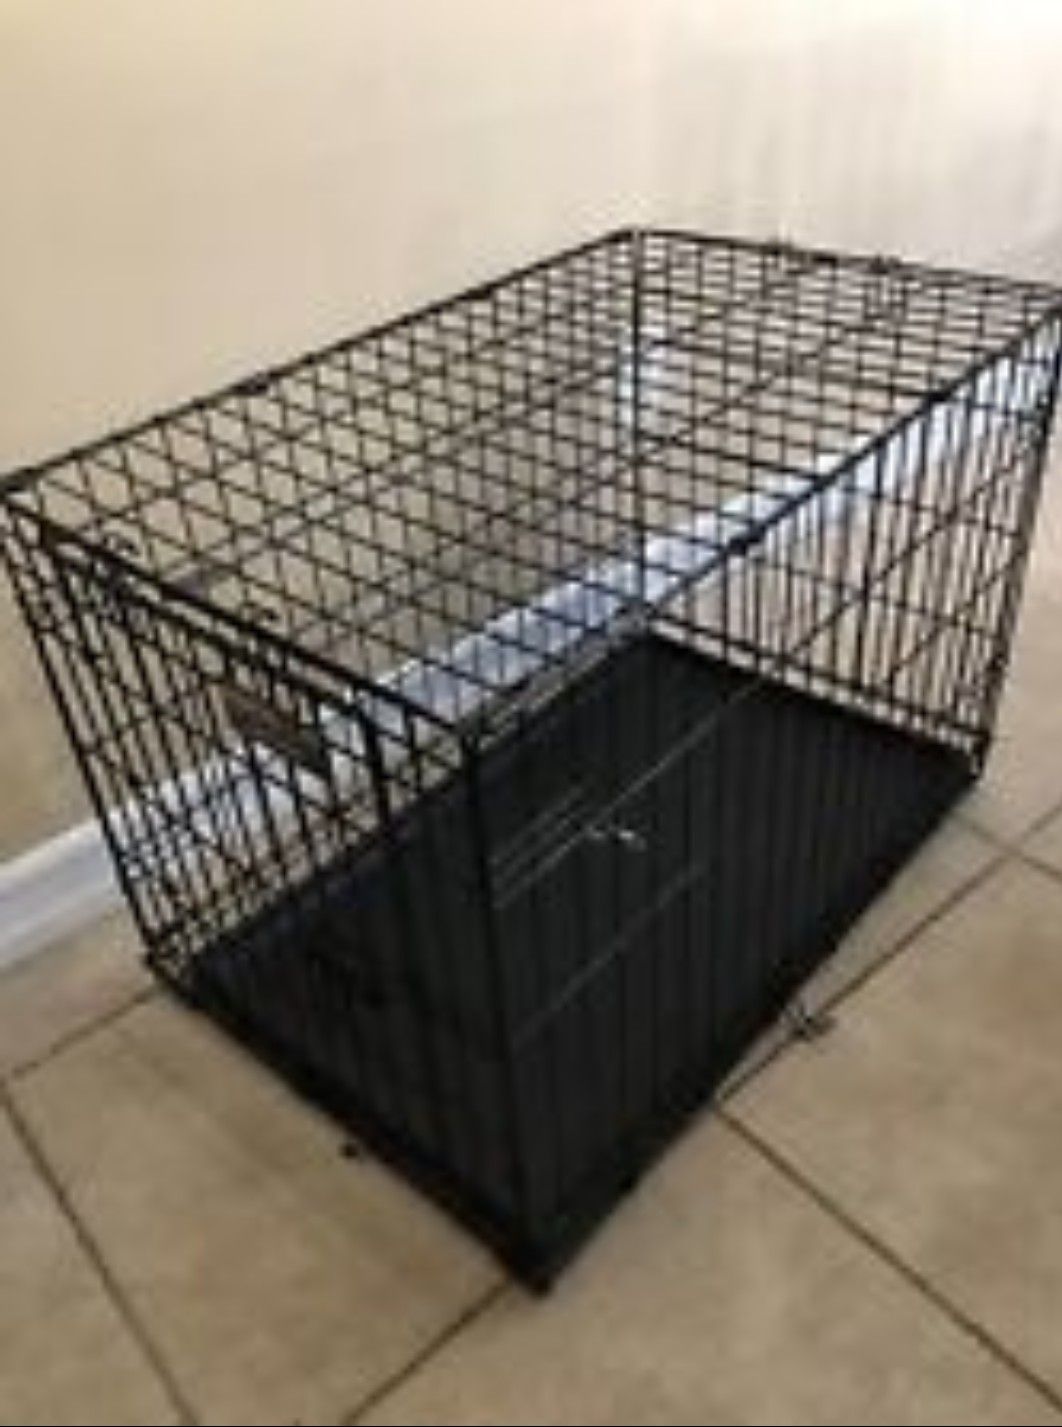 42" double door dog crate